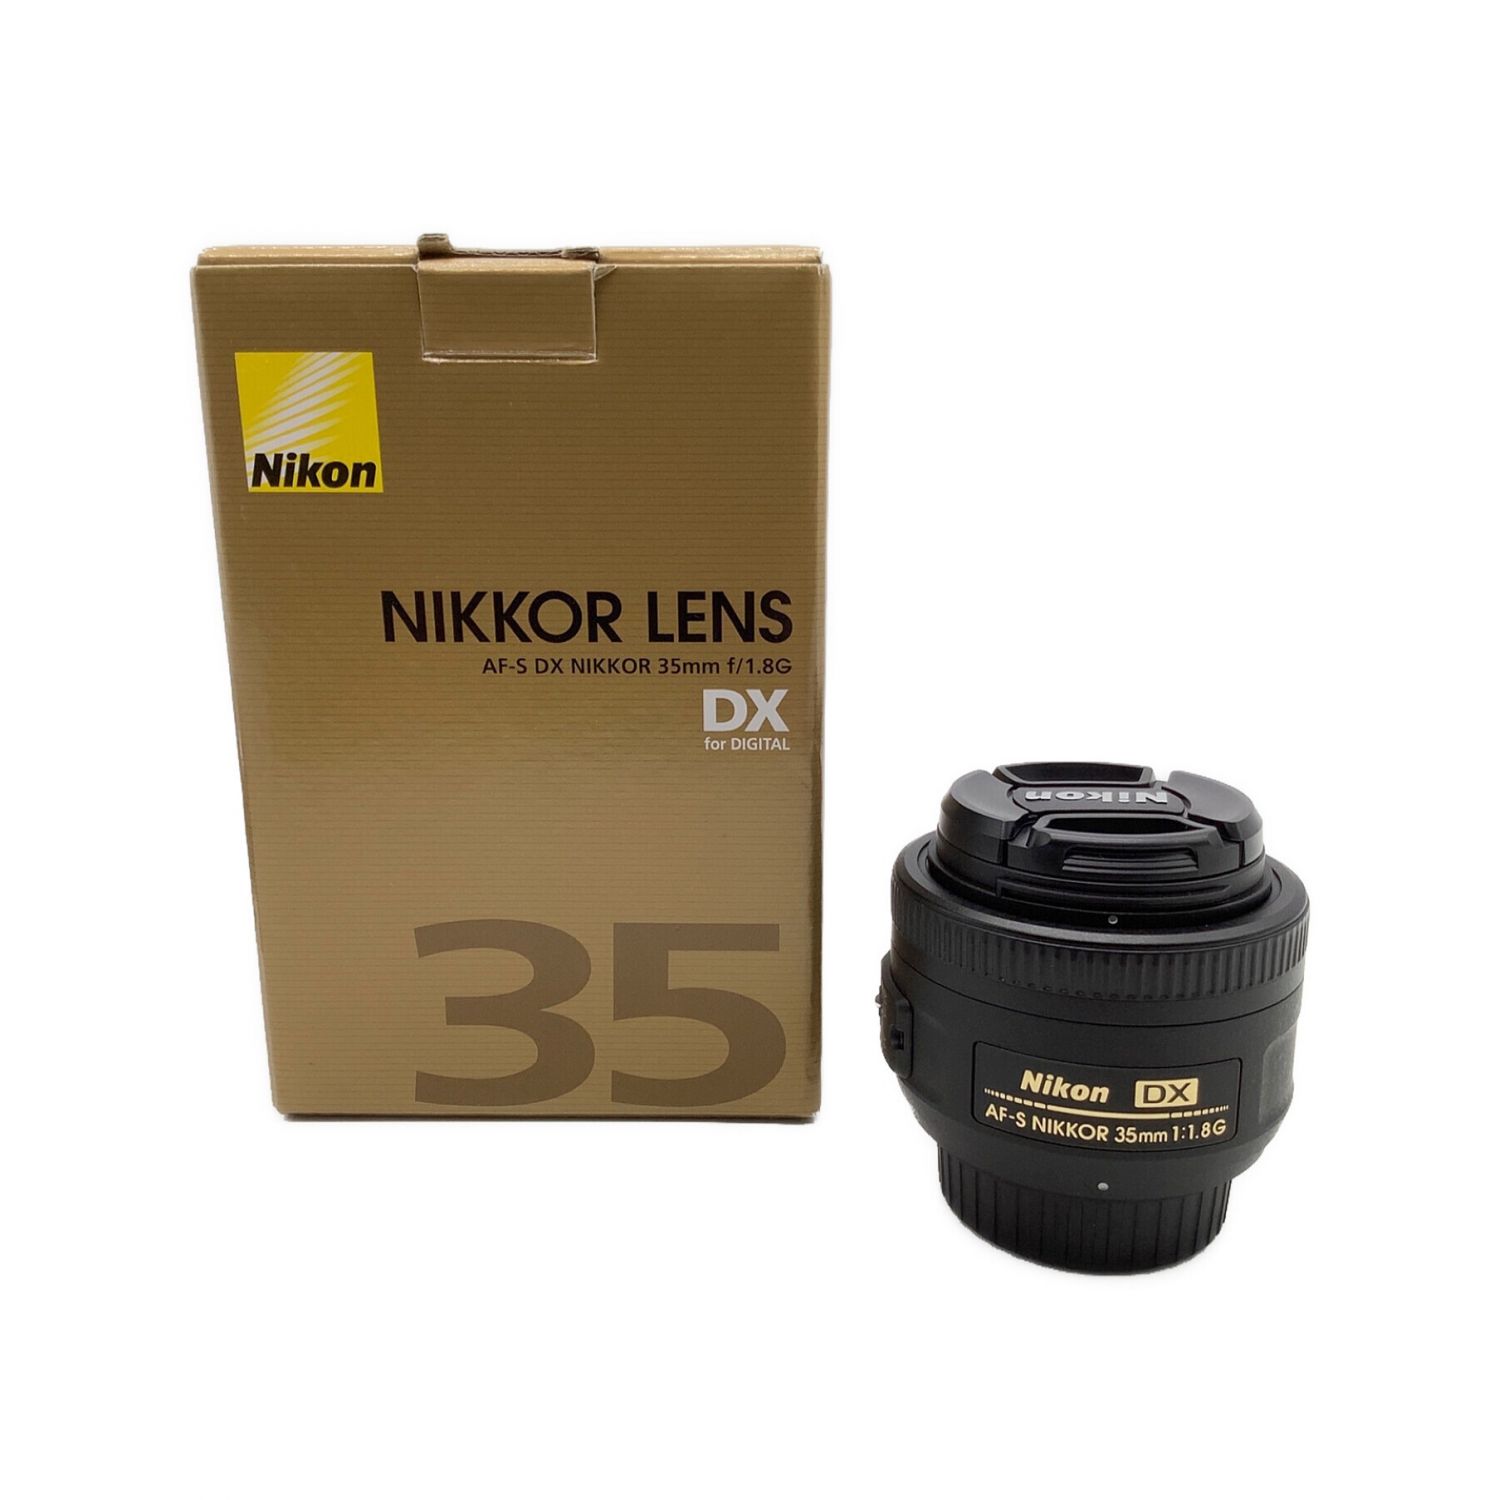 GINGER掲載商品】 レンズ(単焦点) 1:1.8G 35mm NIKKOR AF-S DX Nikon 